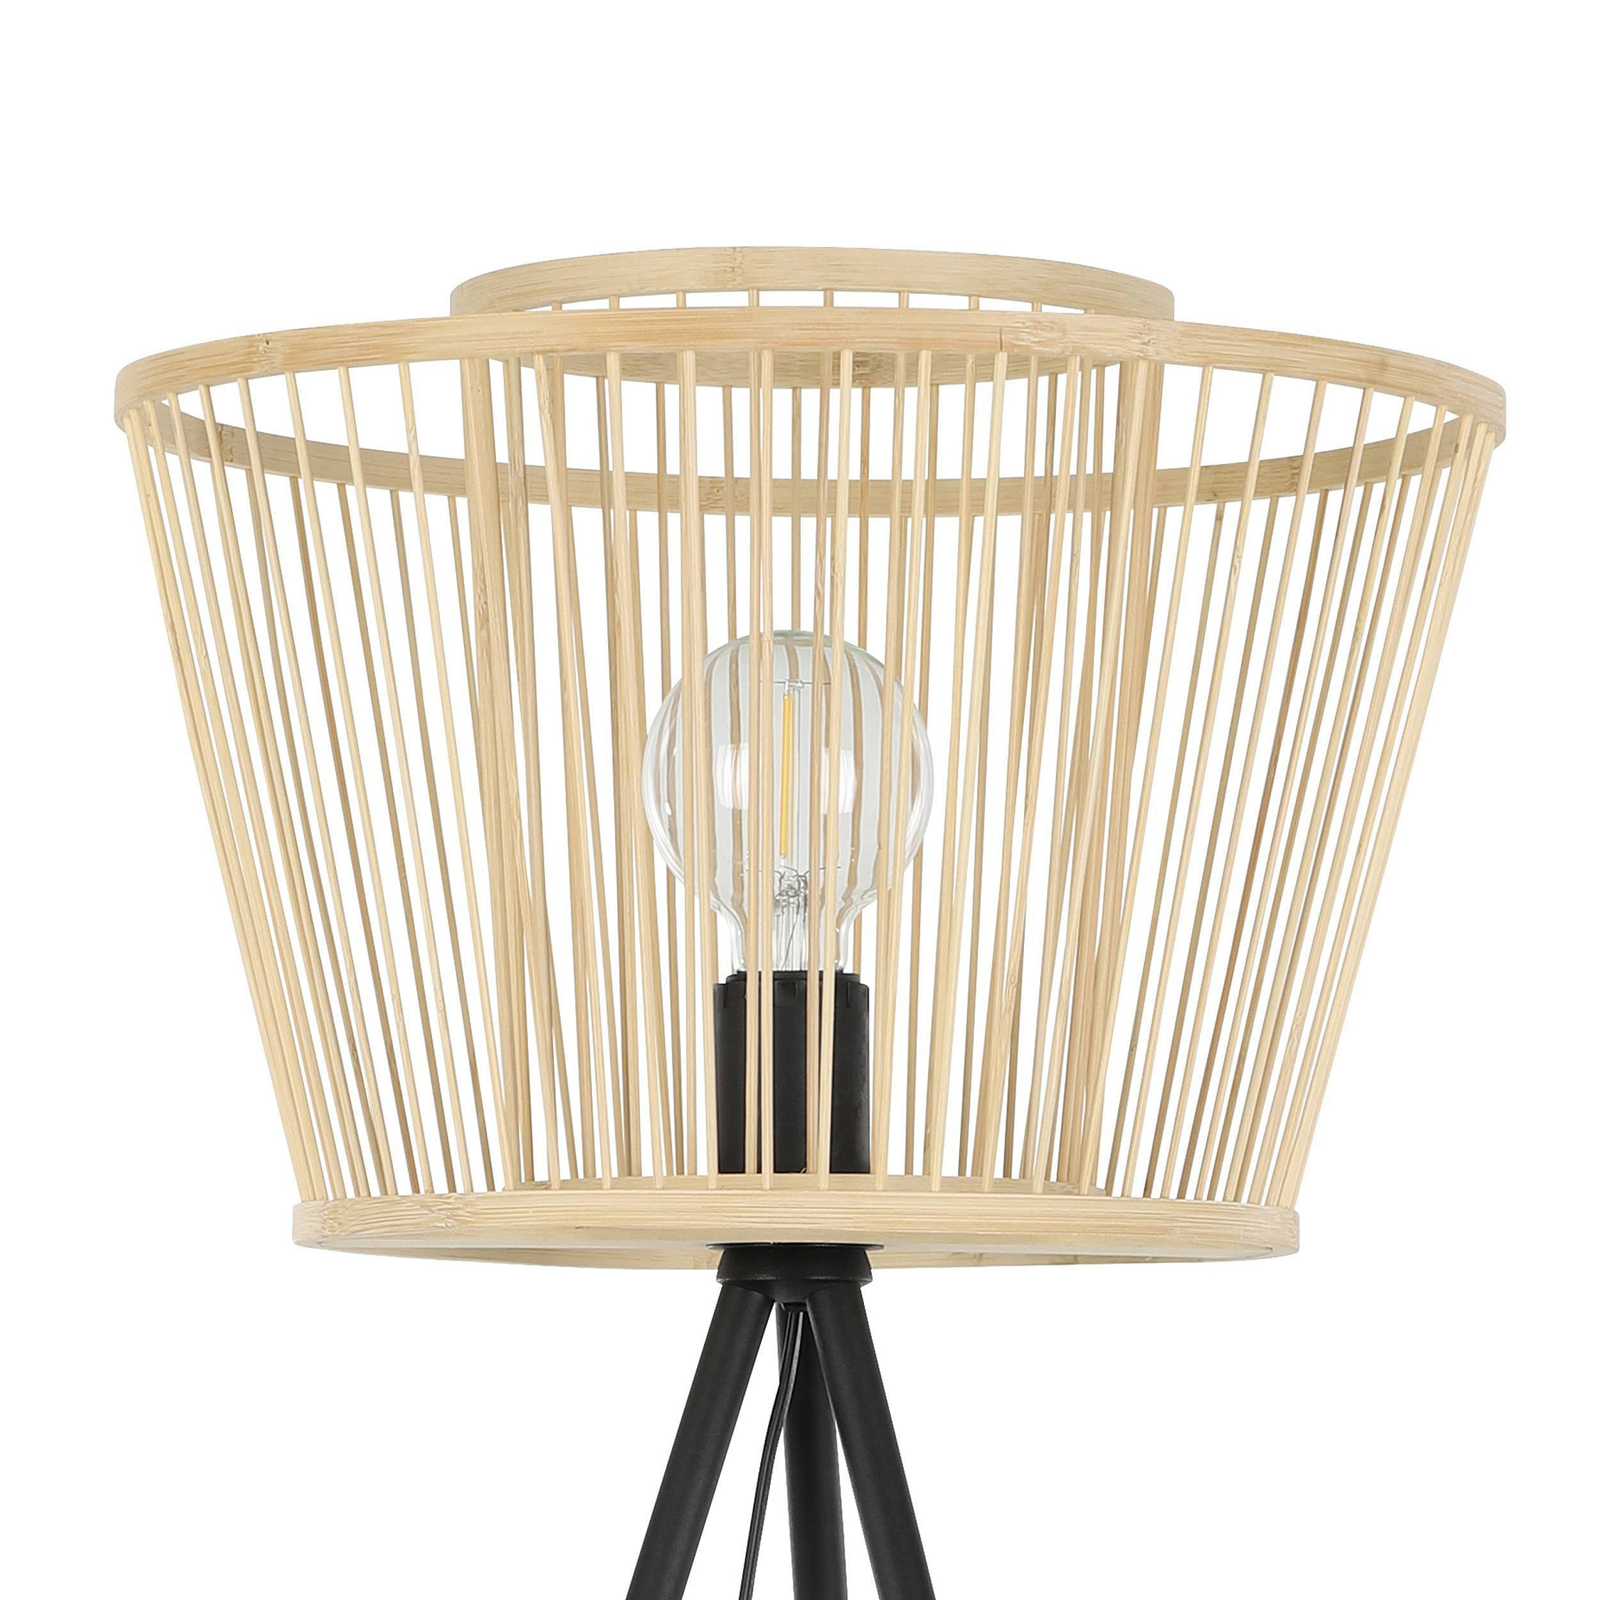 Hykeham gulvlampe, høyde 129,5 cm, natur/svart, bambus